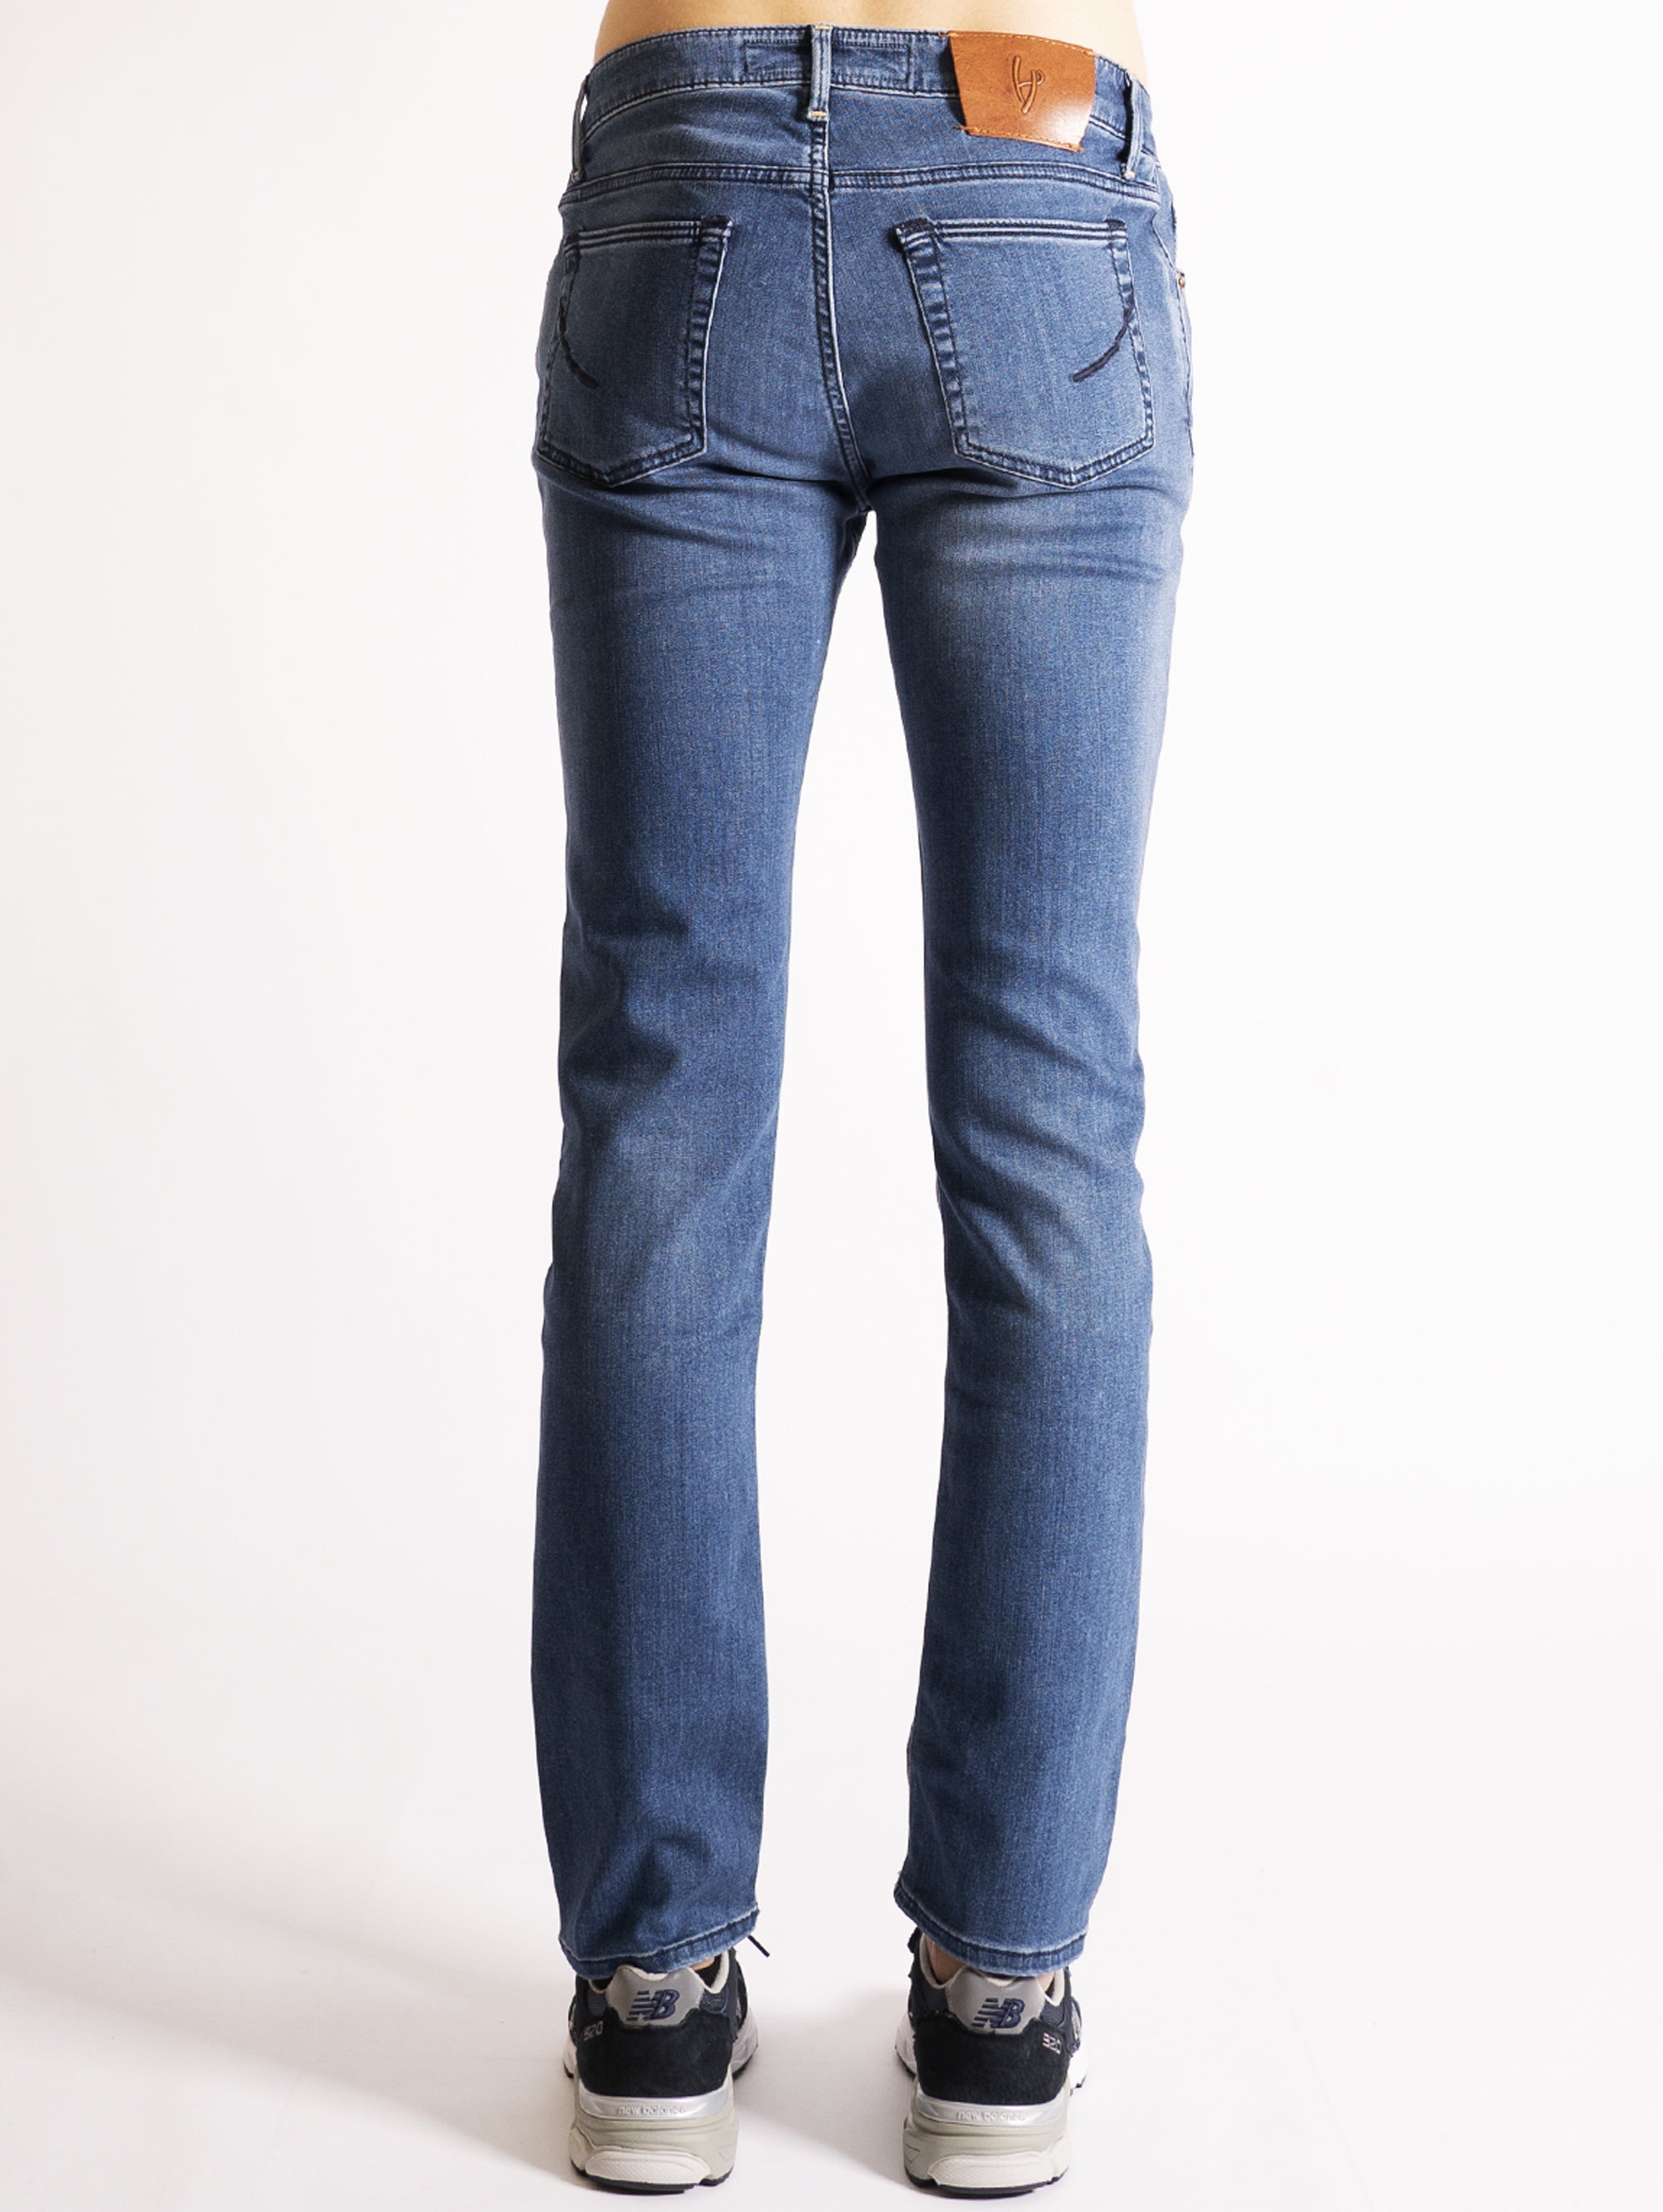 Regural Blue Stretch Jeans